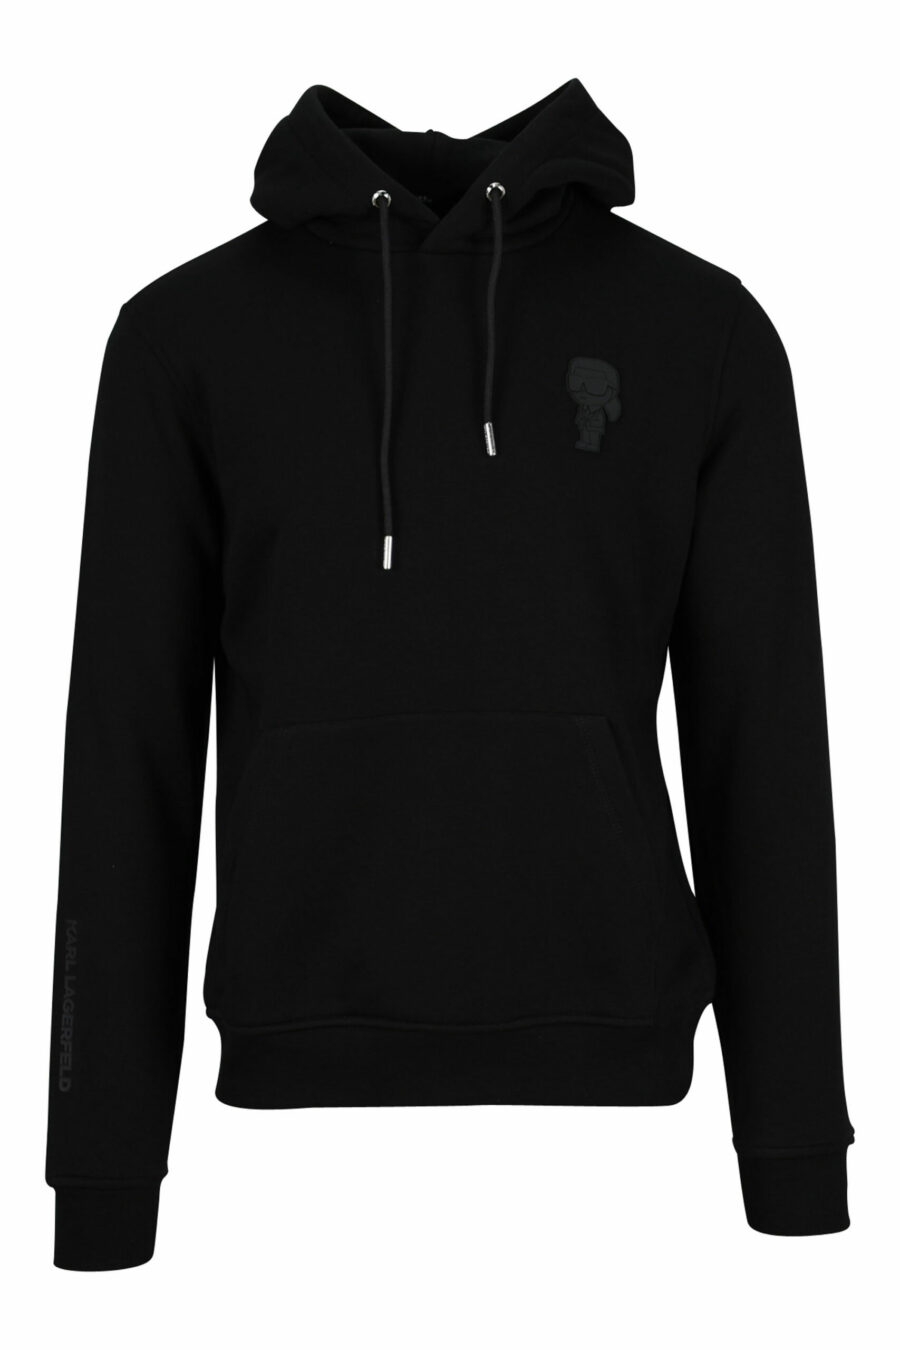 Sweat à capuche noir avec mini-logo en caoutchouc monochrome - 4062226393577 4 échelle